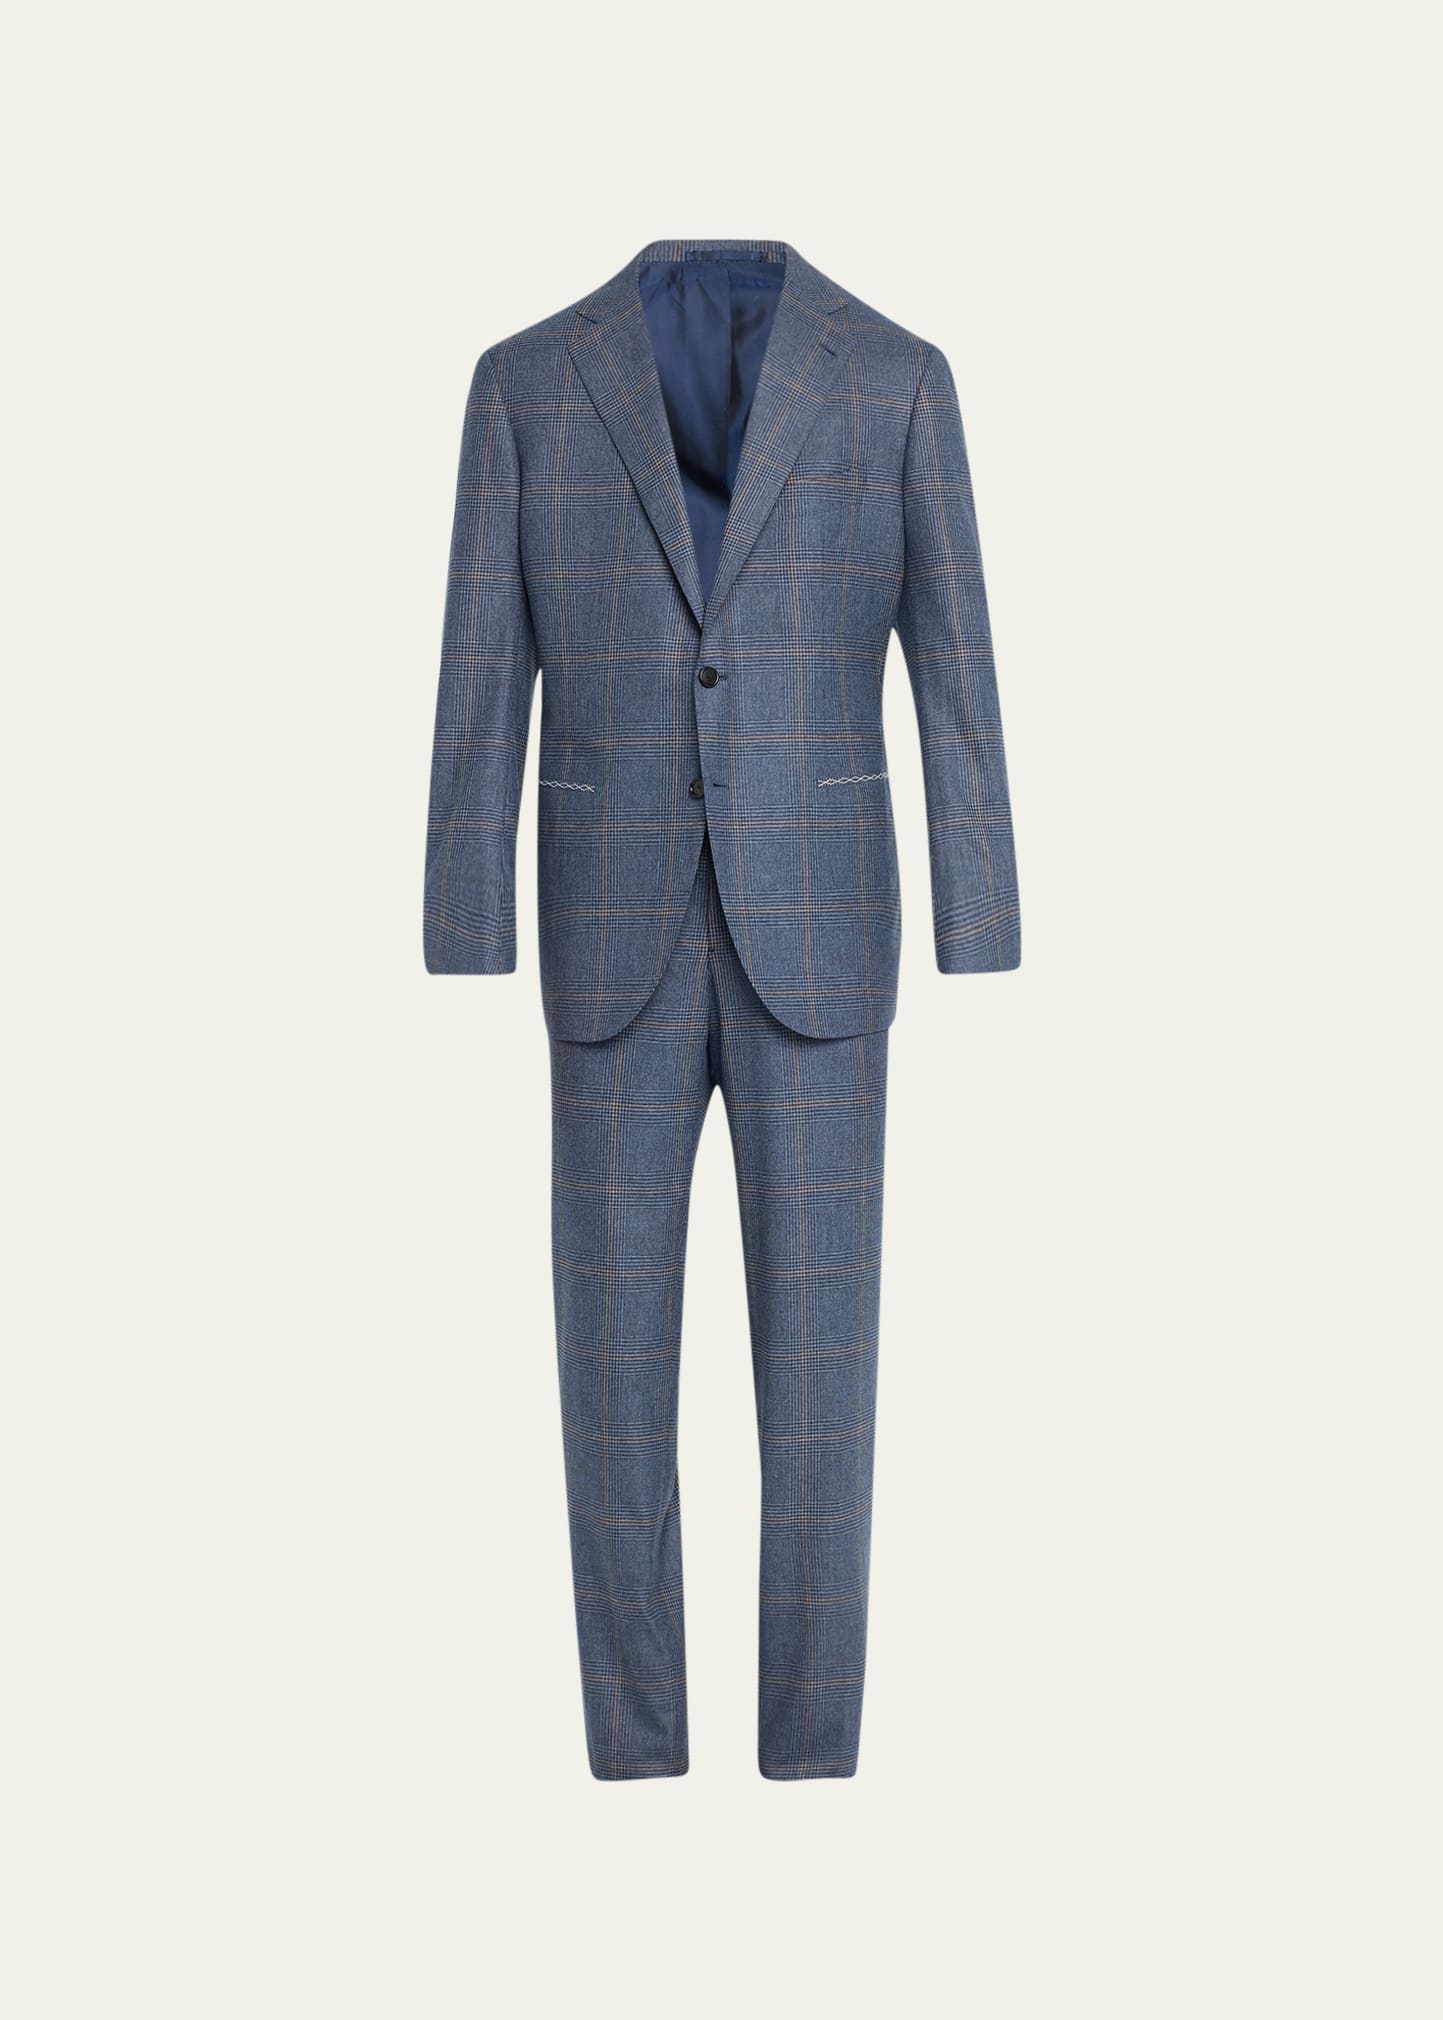 Cesare Attolini Men's Two-tone Check Suit In A21-blue